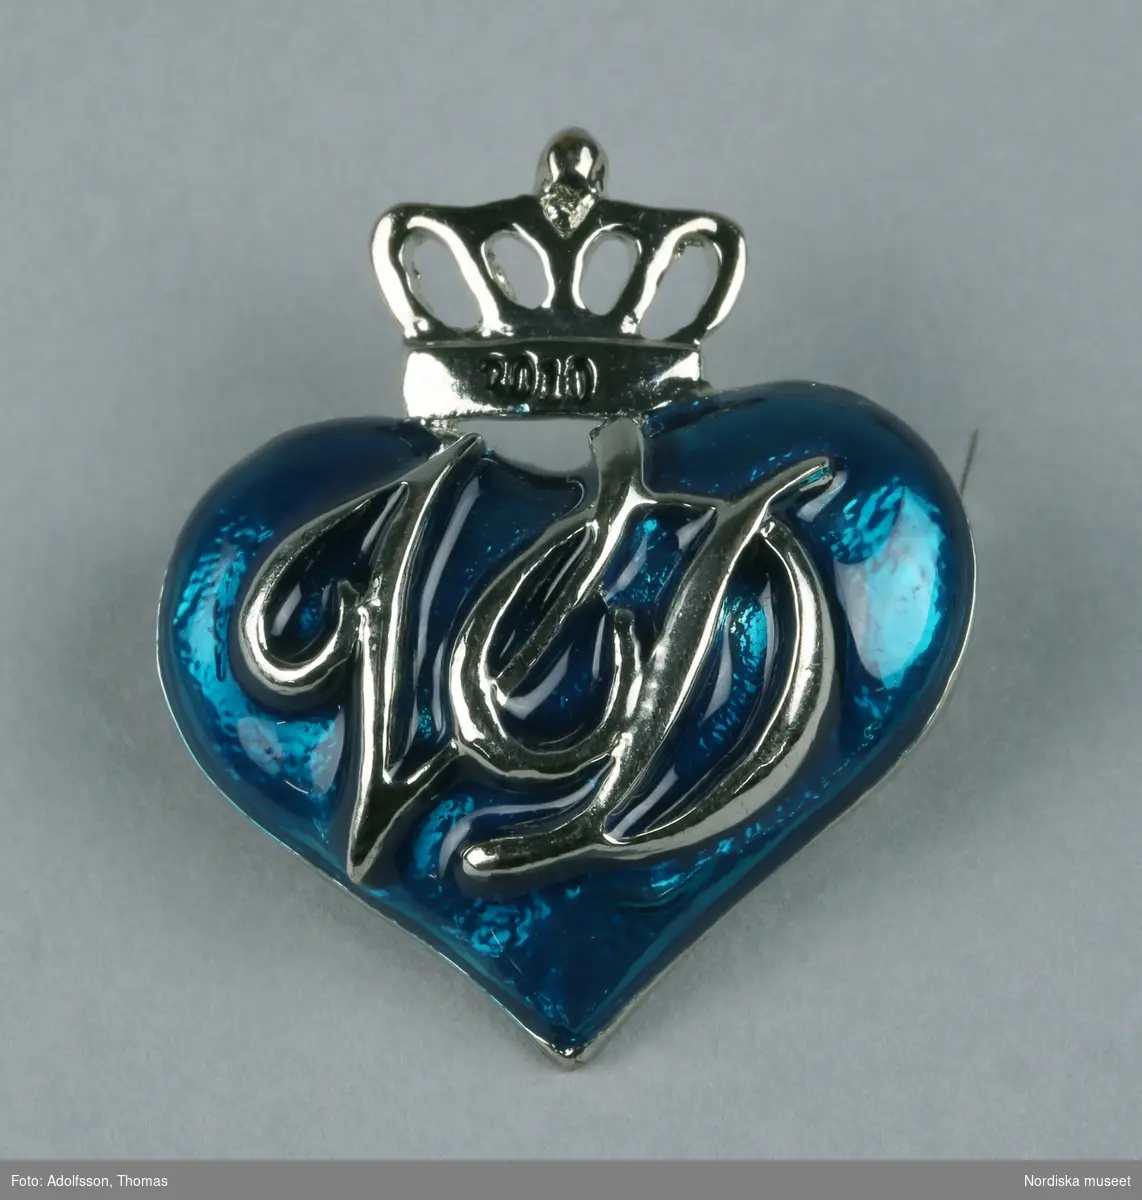 Brosch av vitmetall i form av blått hjärta med sluten krona ovantill. På kronan text "2010" coh på hjärtat "VD", vilket står för Viktoria och Daniel. På baksidan nål. 
/Leif Wallin 2010-09-10